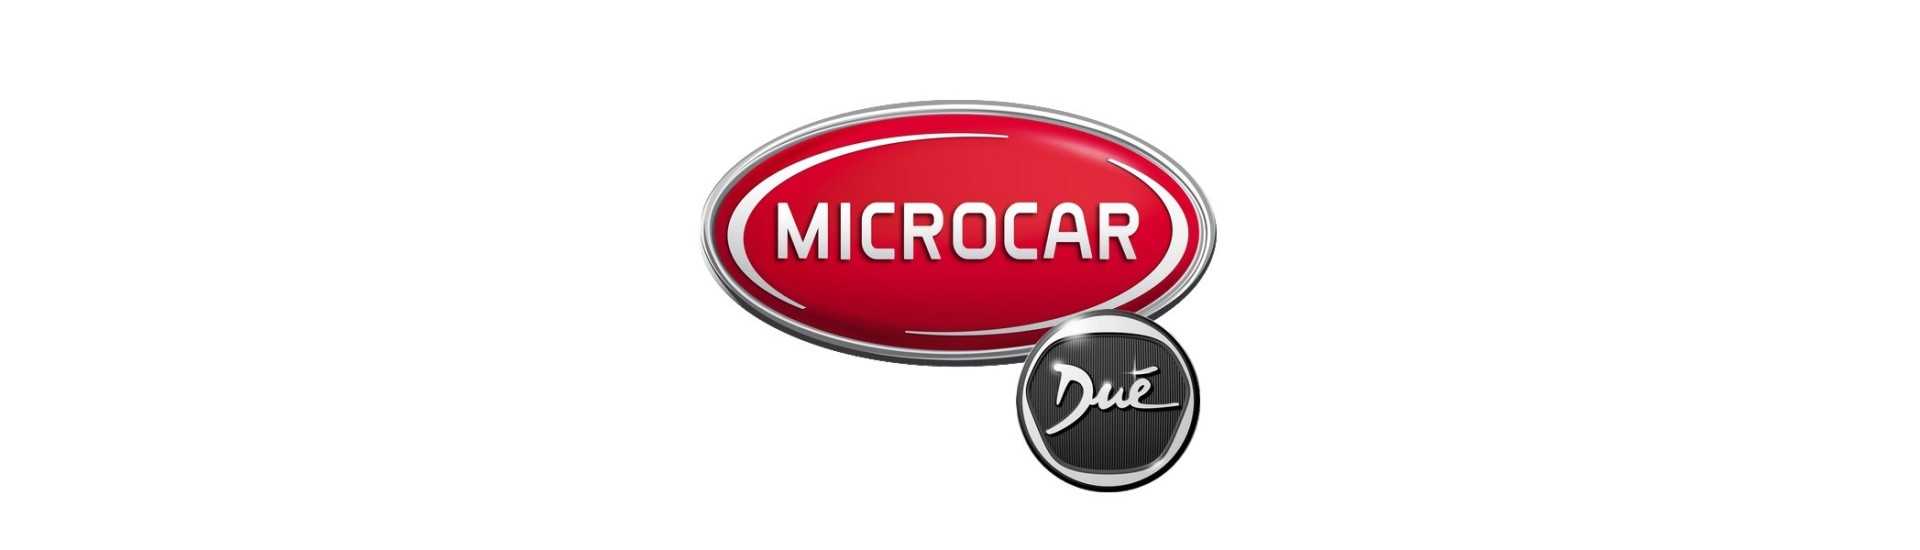 Motorschallisolierung zum besten Preiswagen ohne Genehmigung Microcar Dué